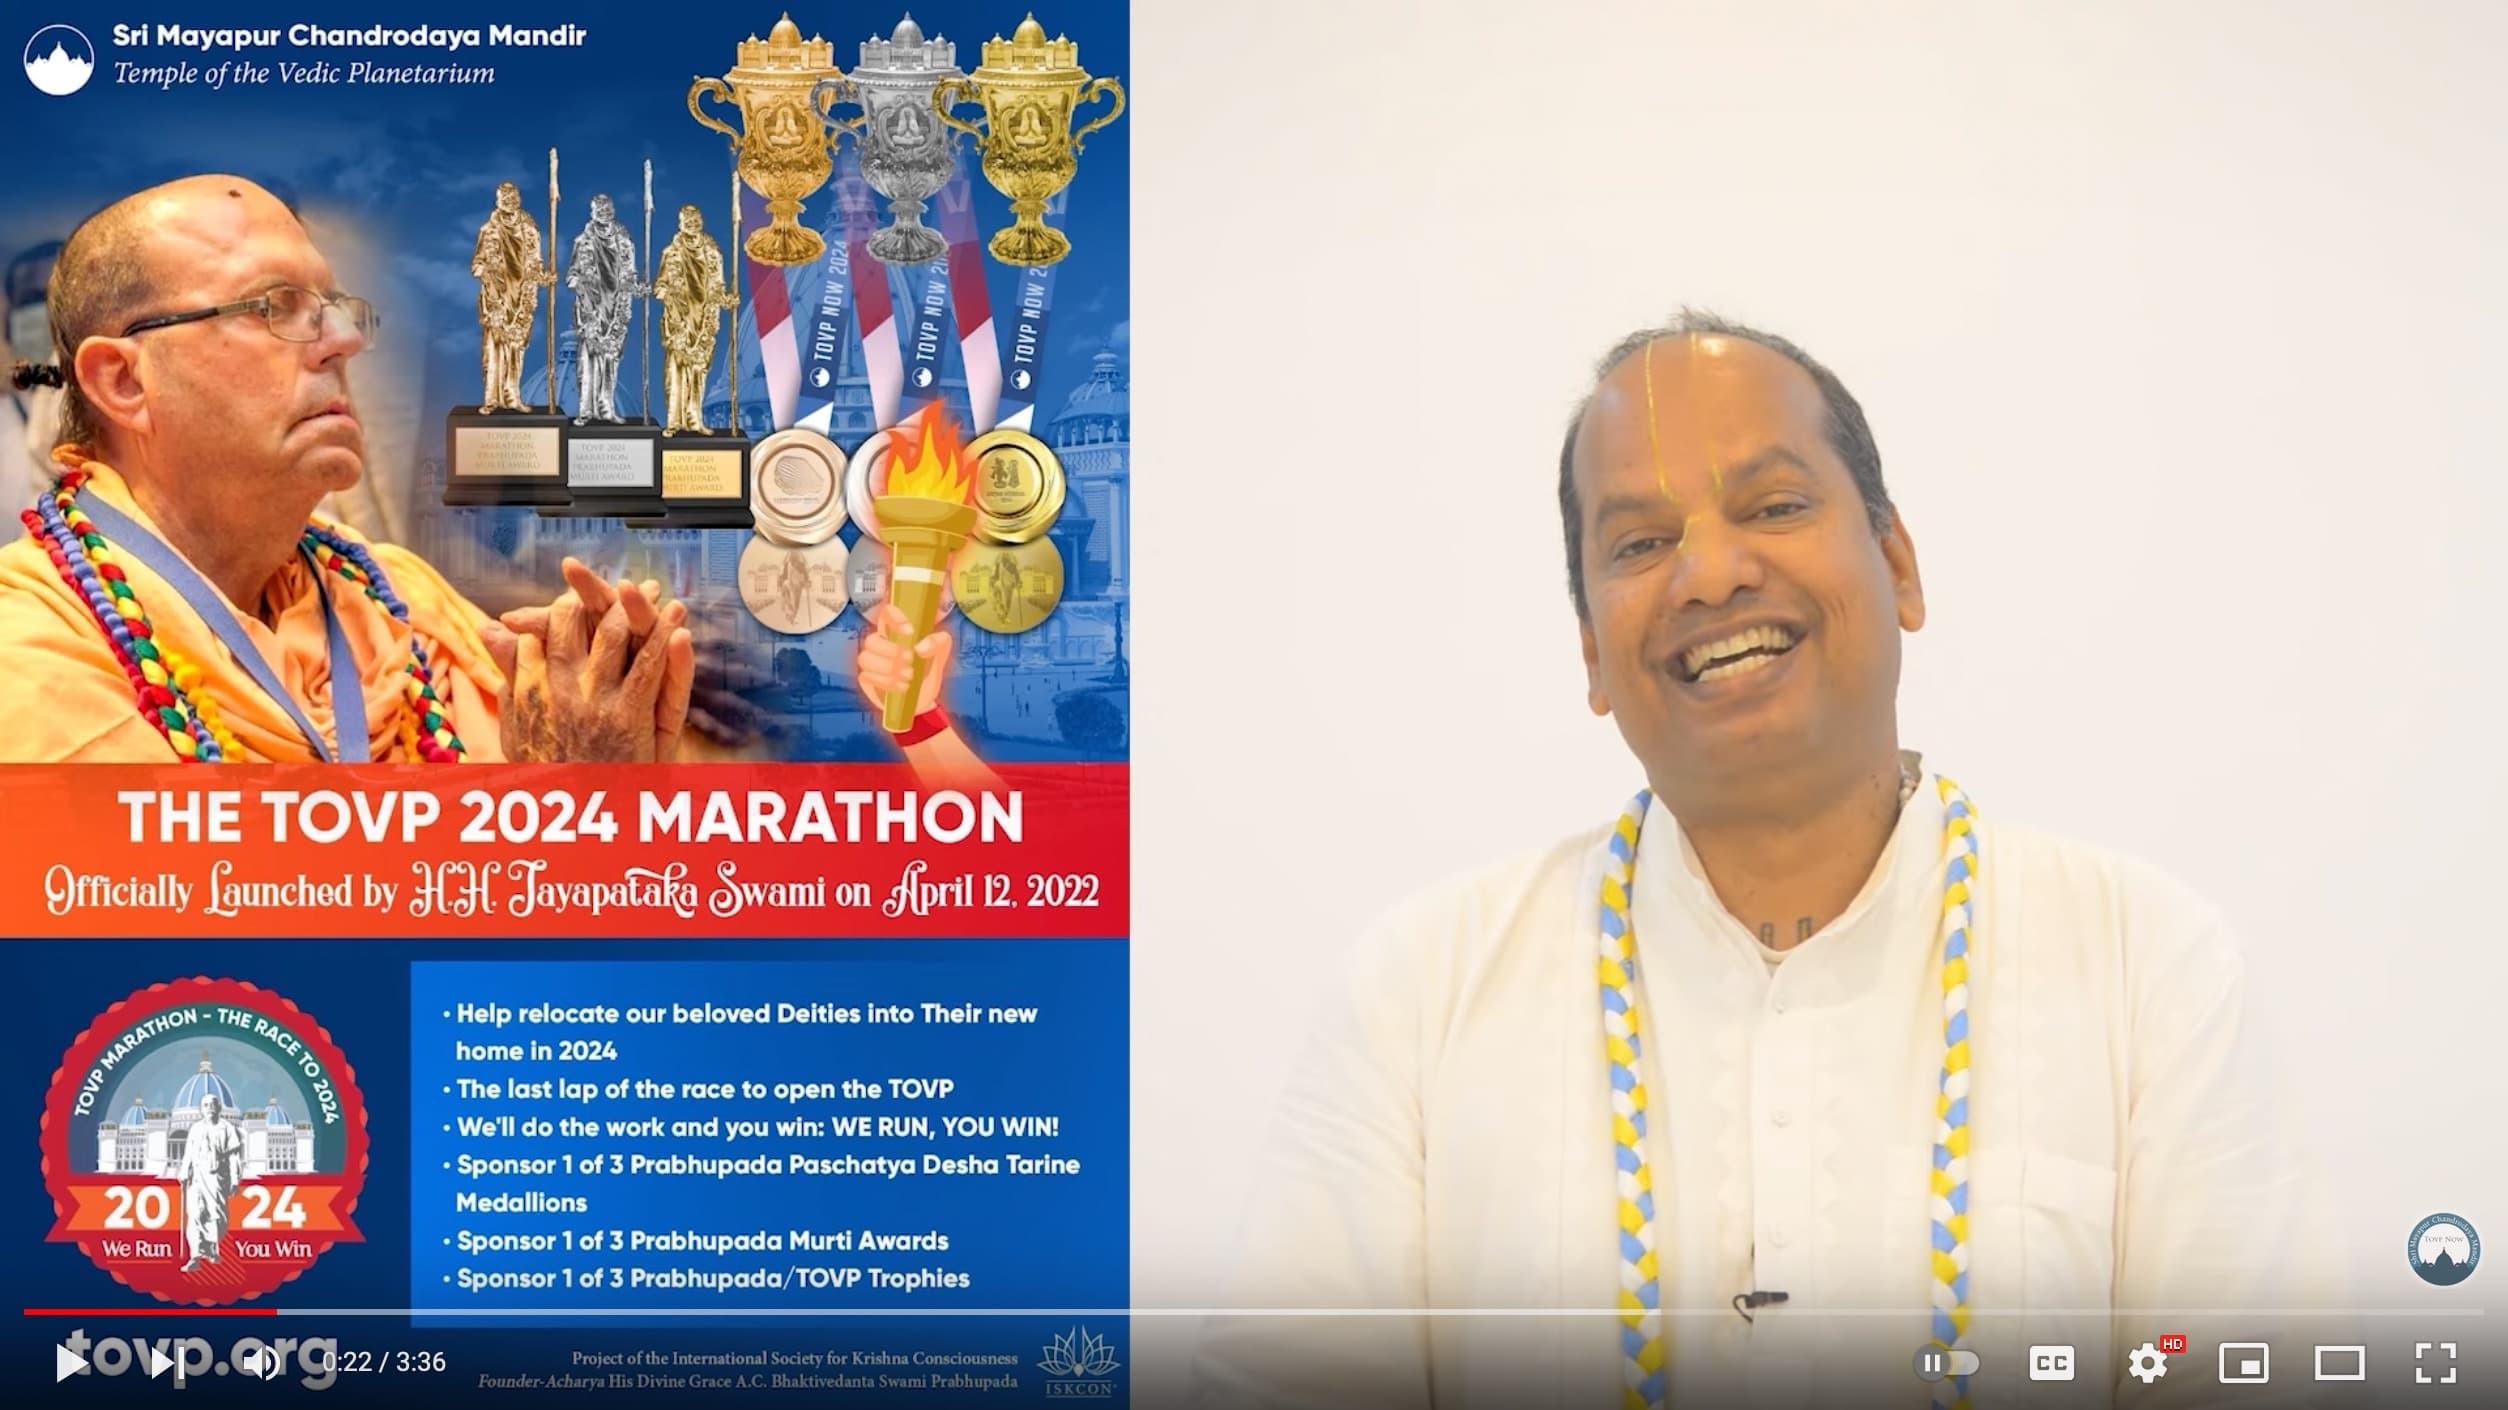 Braja Vilasa Speaks About the TOVP 2024 Marathon and #GivingToNrsimha 12 Day Matching Fundraiser: May 3 (Akshaya Tritiya) - May 15 (Nrsimha Caturdasi)